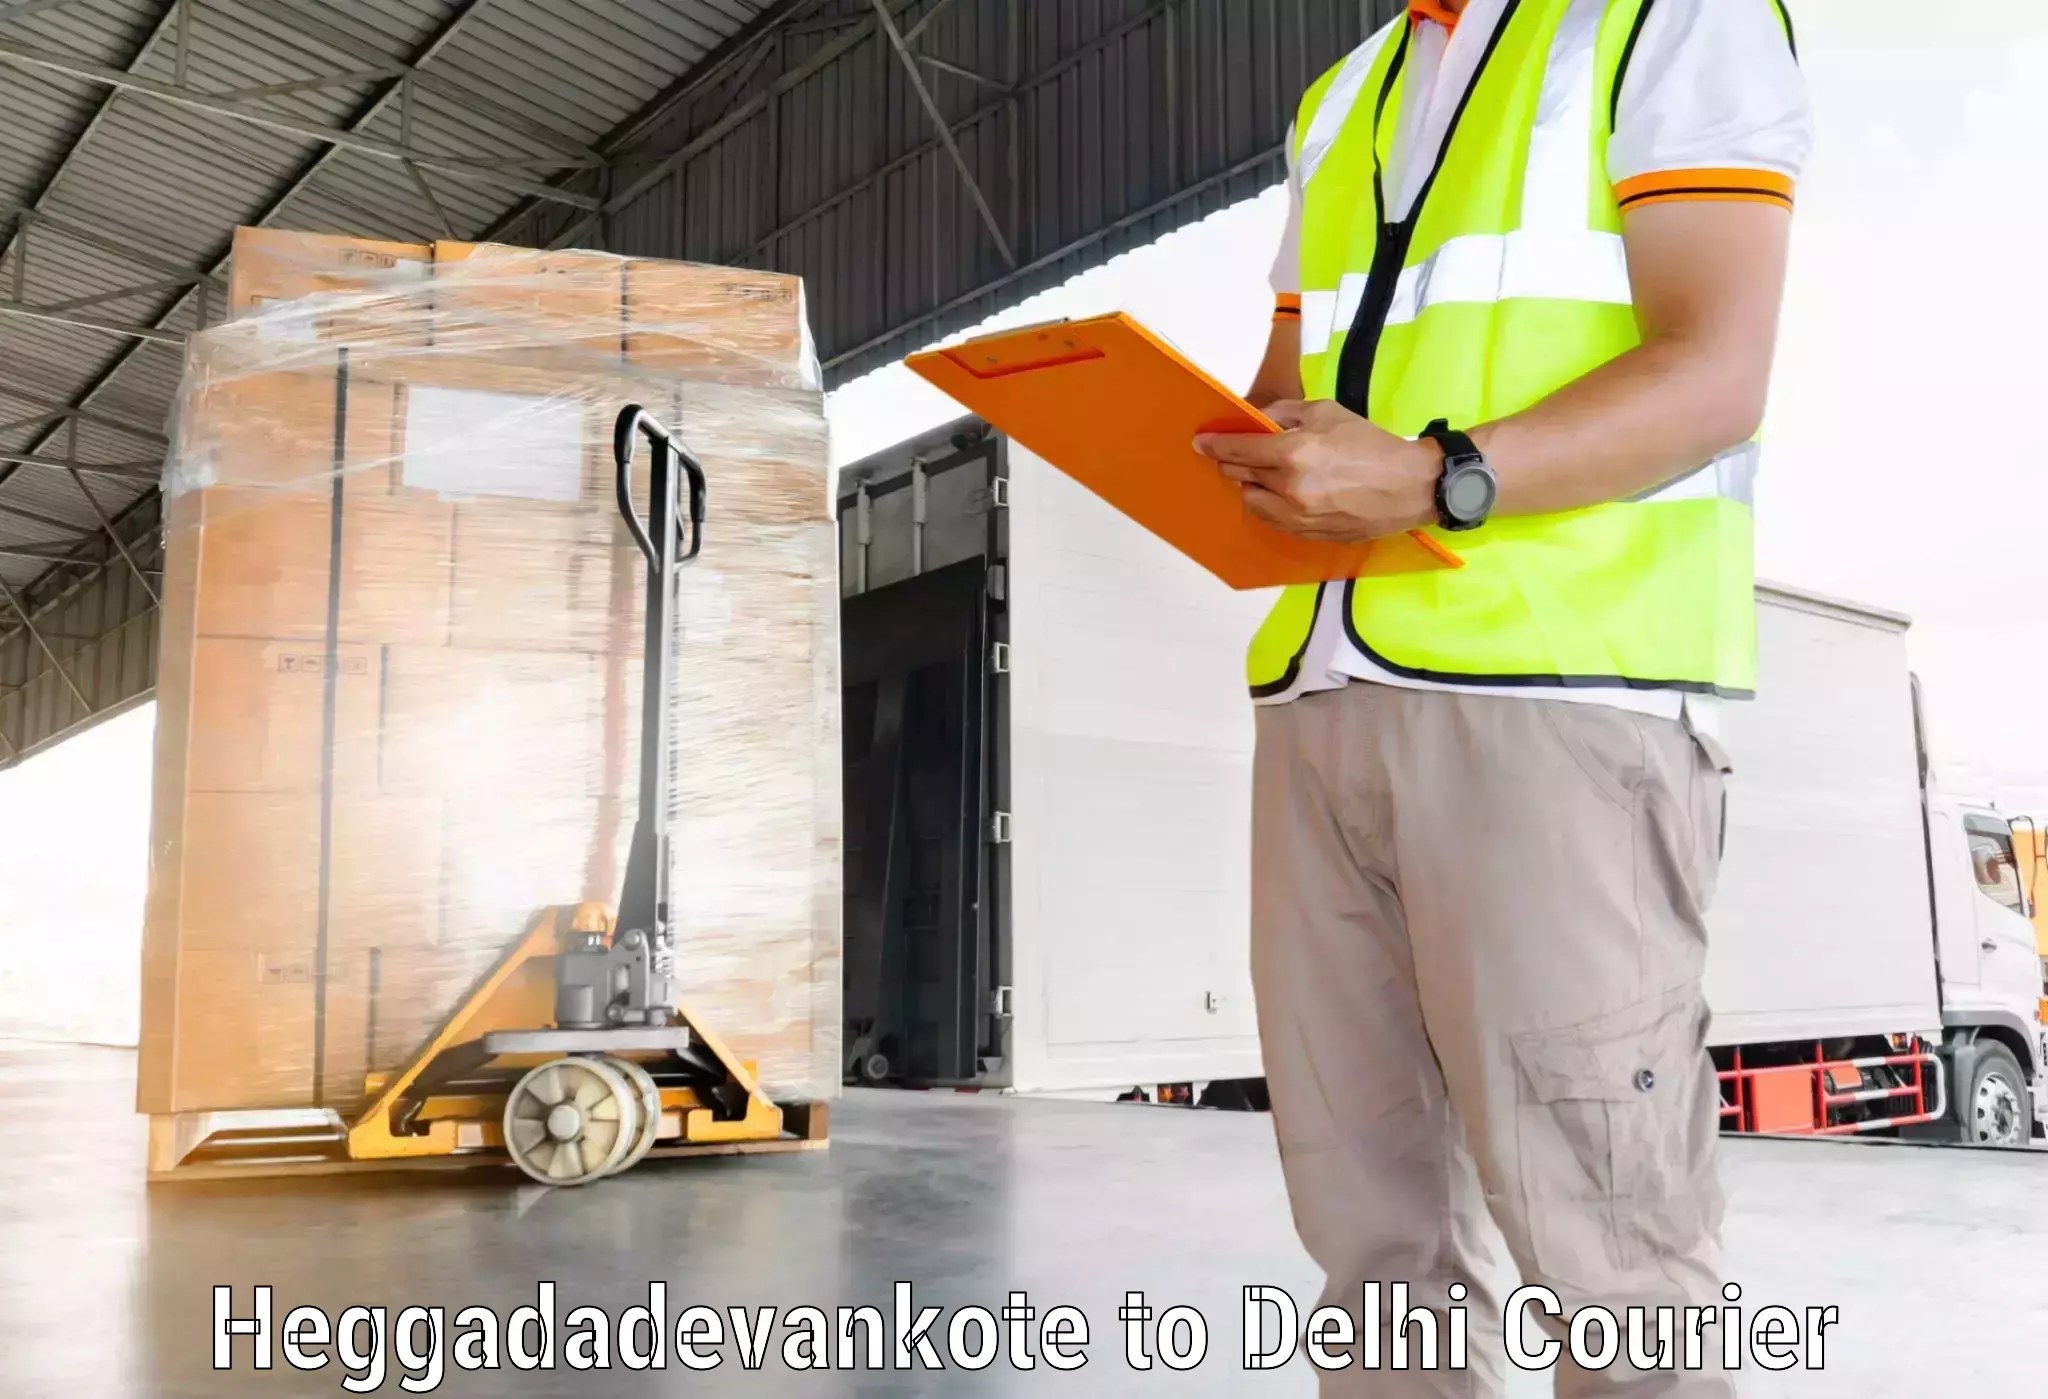 Comprehensive shipping services Heggadadevankote to Jamia Millia Islamia New Delhi